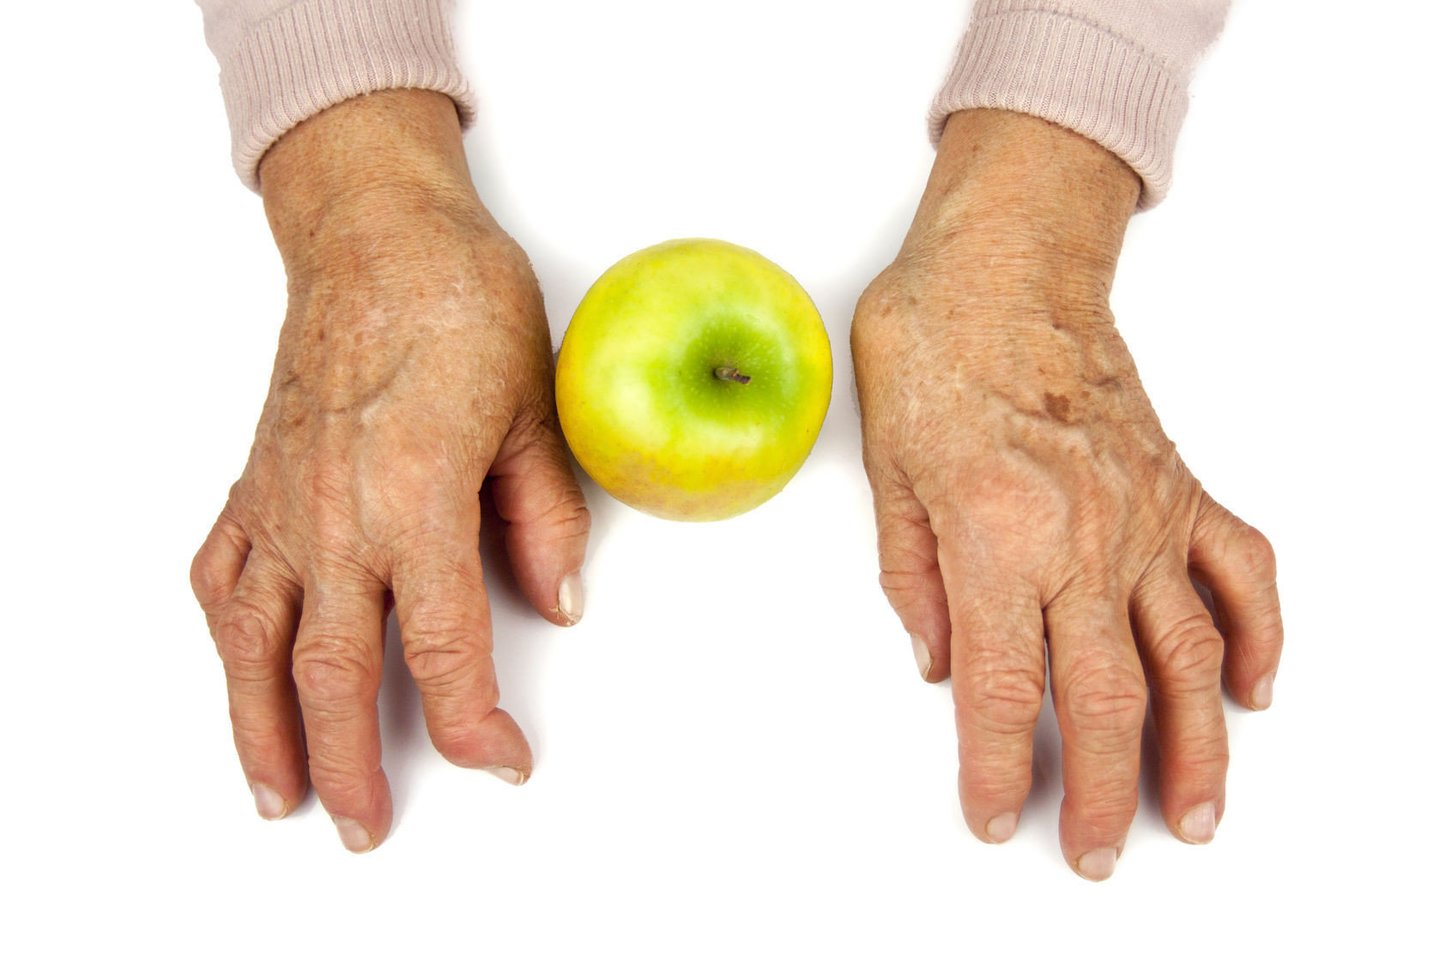 Visame pasaulyje milijonai žmonių serga artritu, jų gyvenimas dažnai būna paženklintas nuolatinio sąnarių skausmo ir uždegimo.  <br>123rf.com